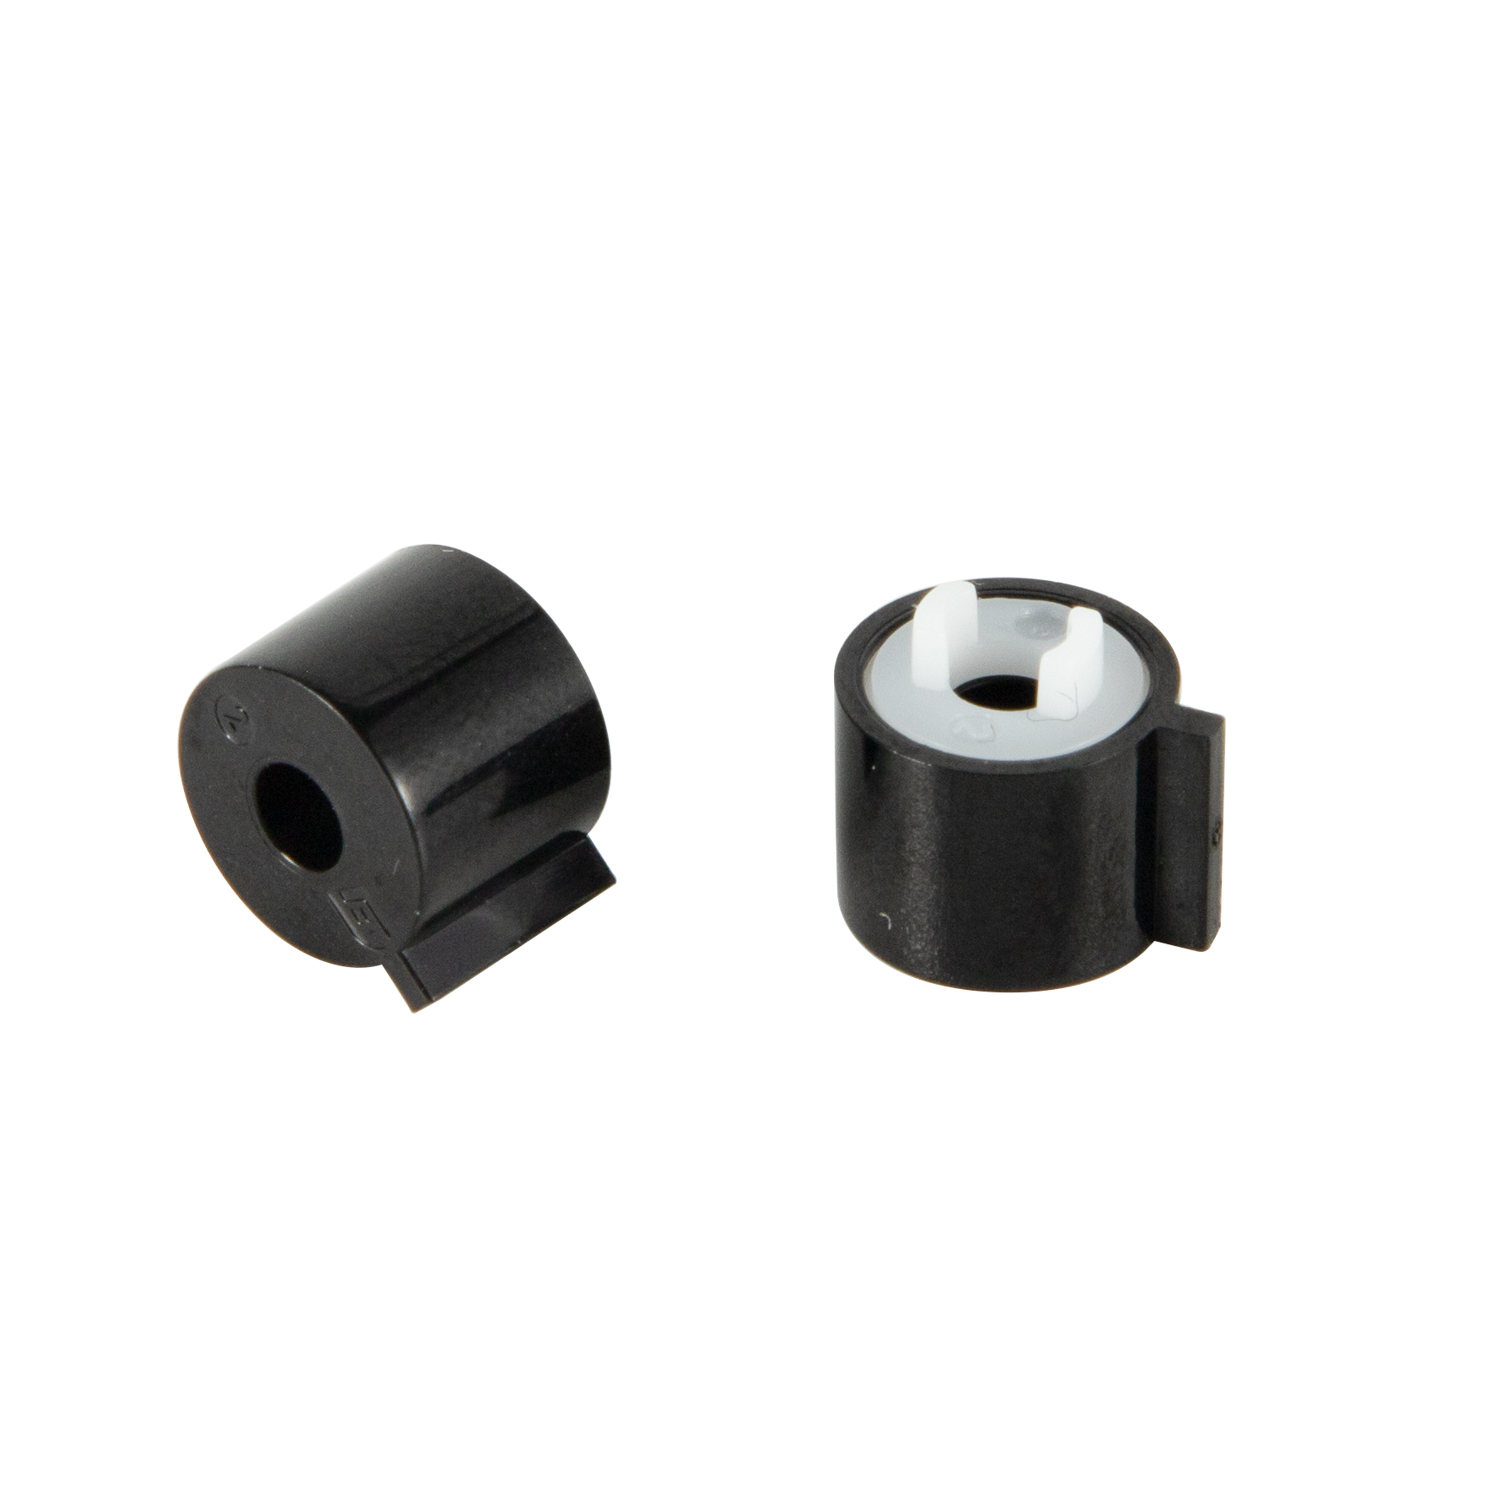 Dobond mini hinge damper small barrel dampener hardware components for vehicle automotive